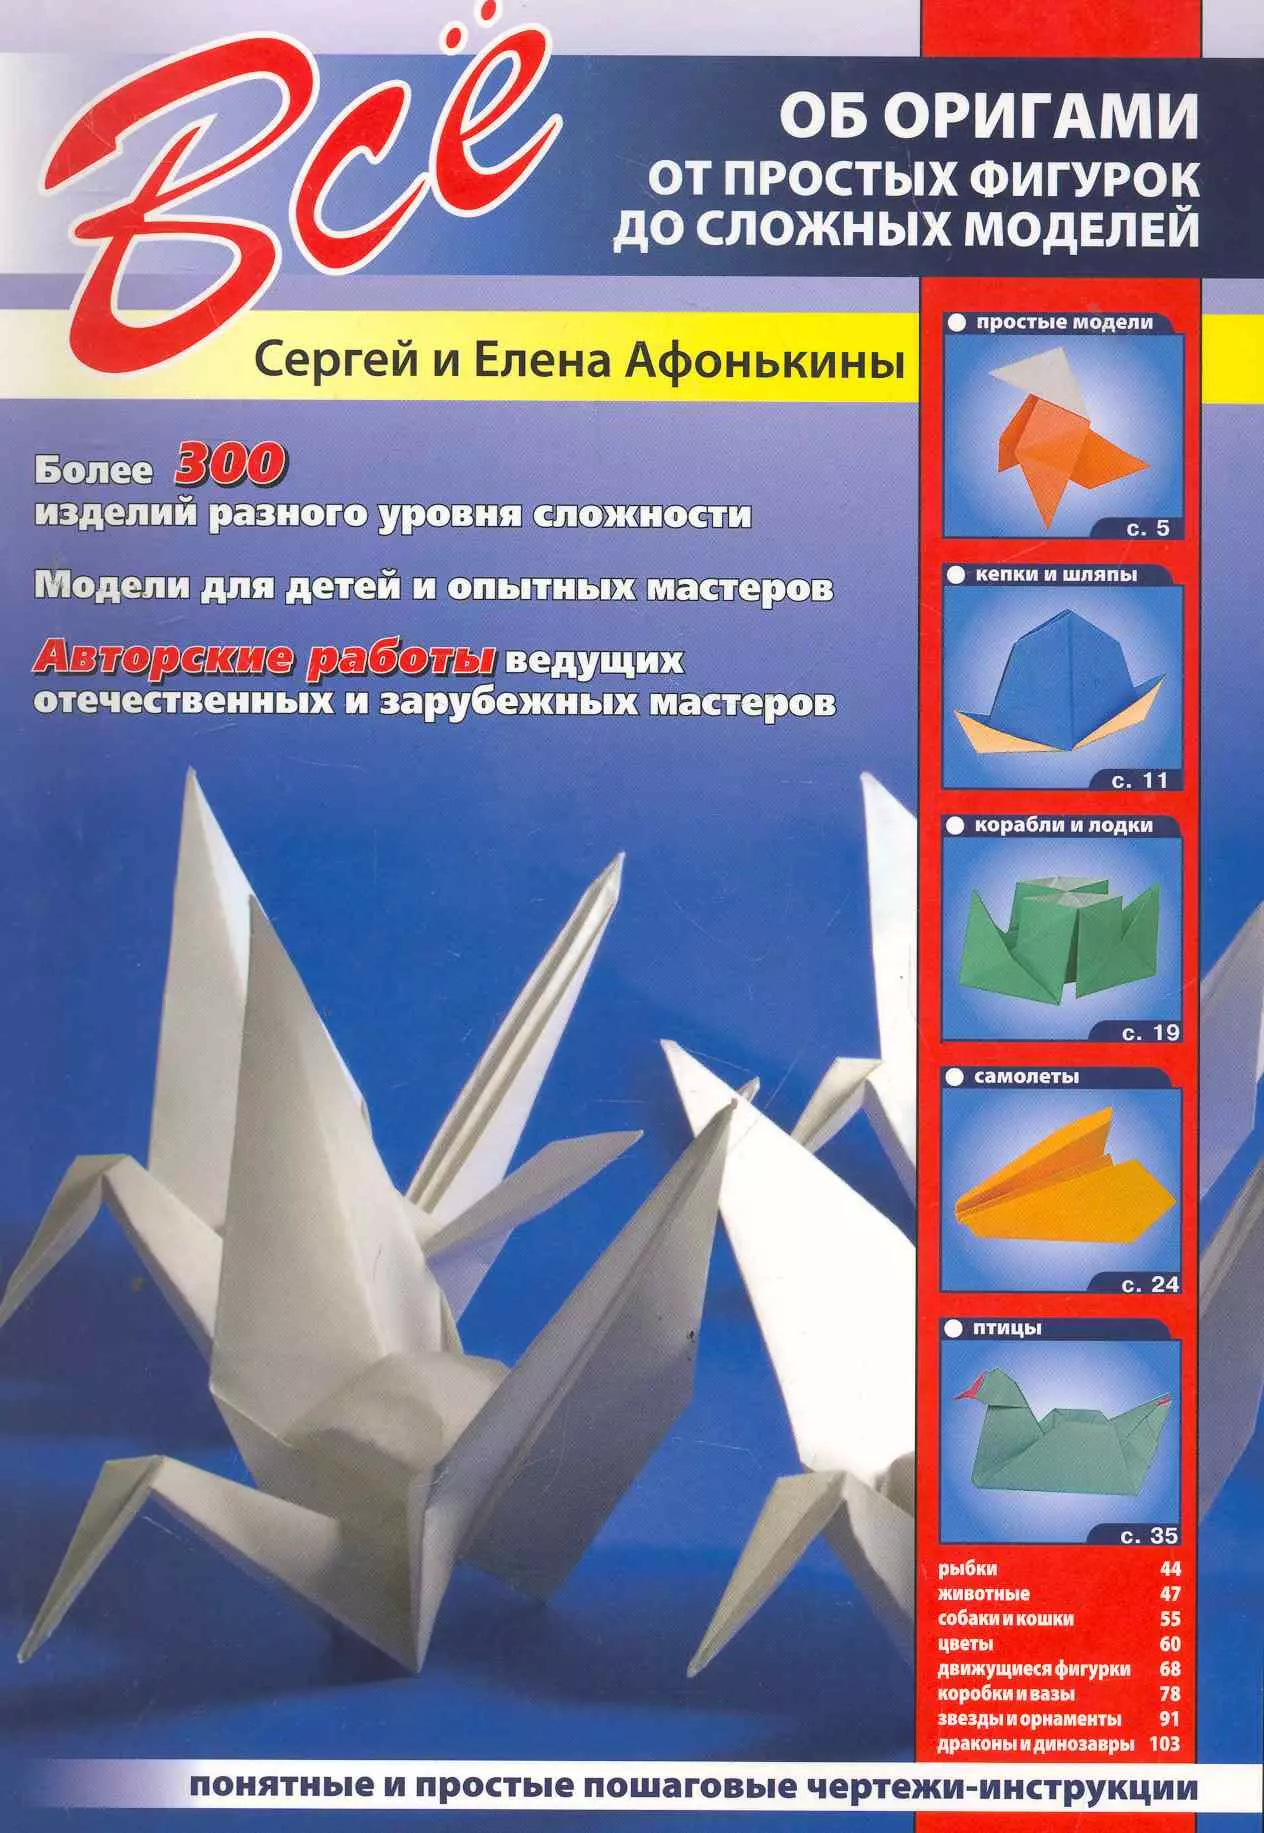 Афонькин Сергей Юрьевич - Все об оригами. От простых фигурок до сложных моделей